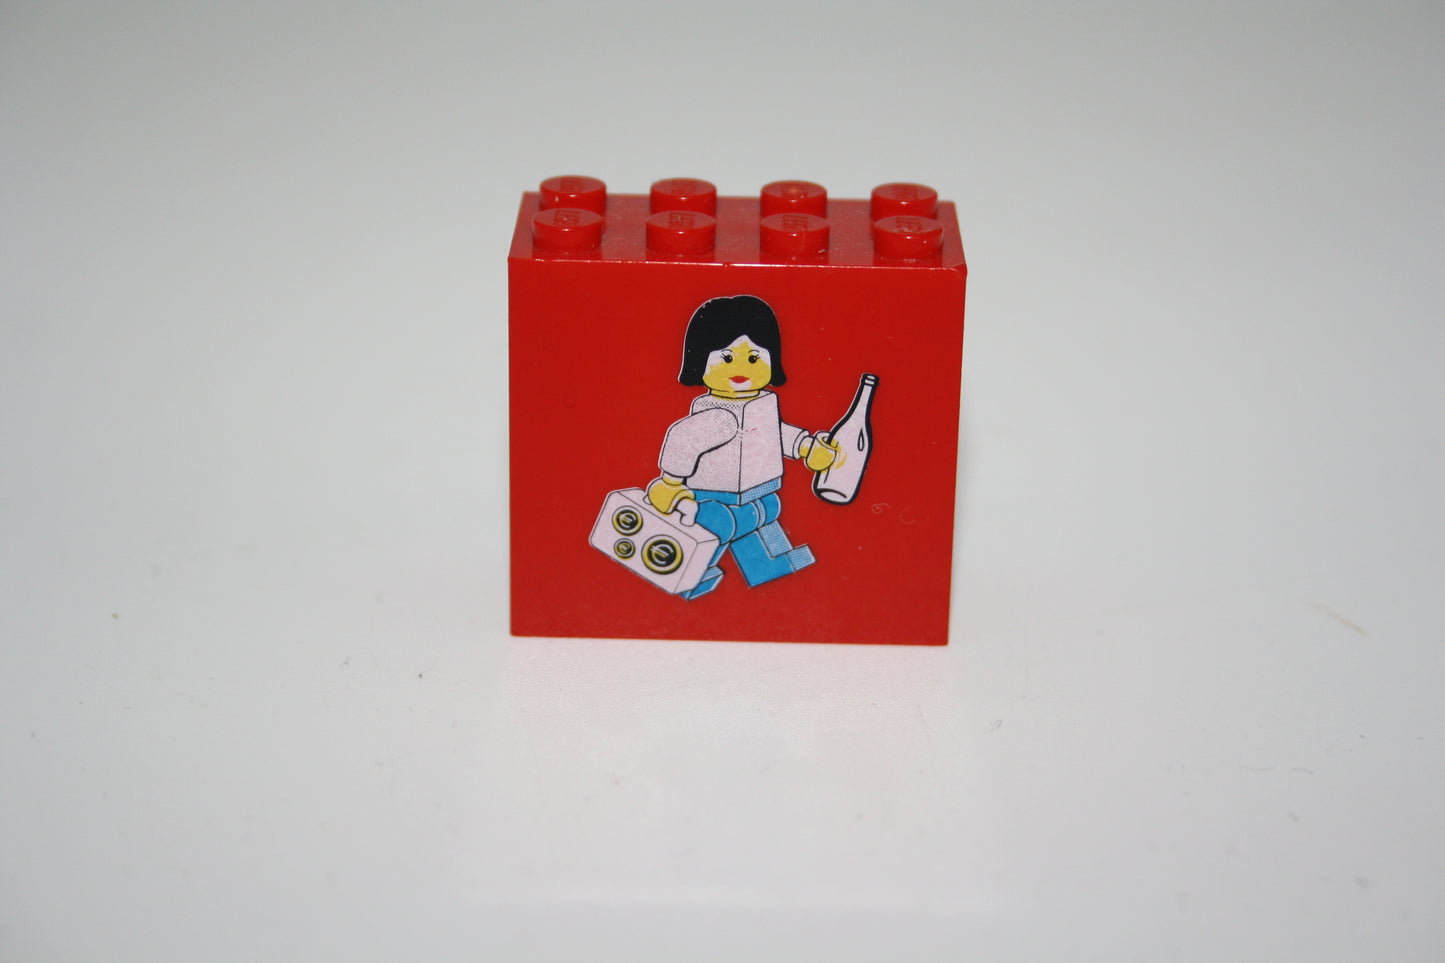 Lego - Frau mit Geldkoffer und Flasche -  Sammelsteine - 2x4x2 Stein - Motivstein